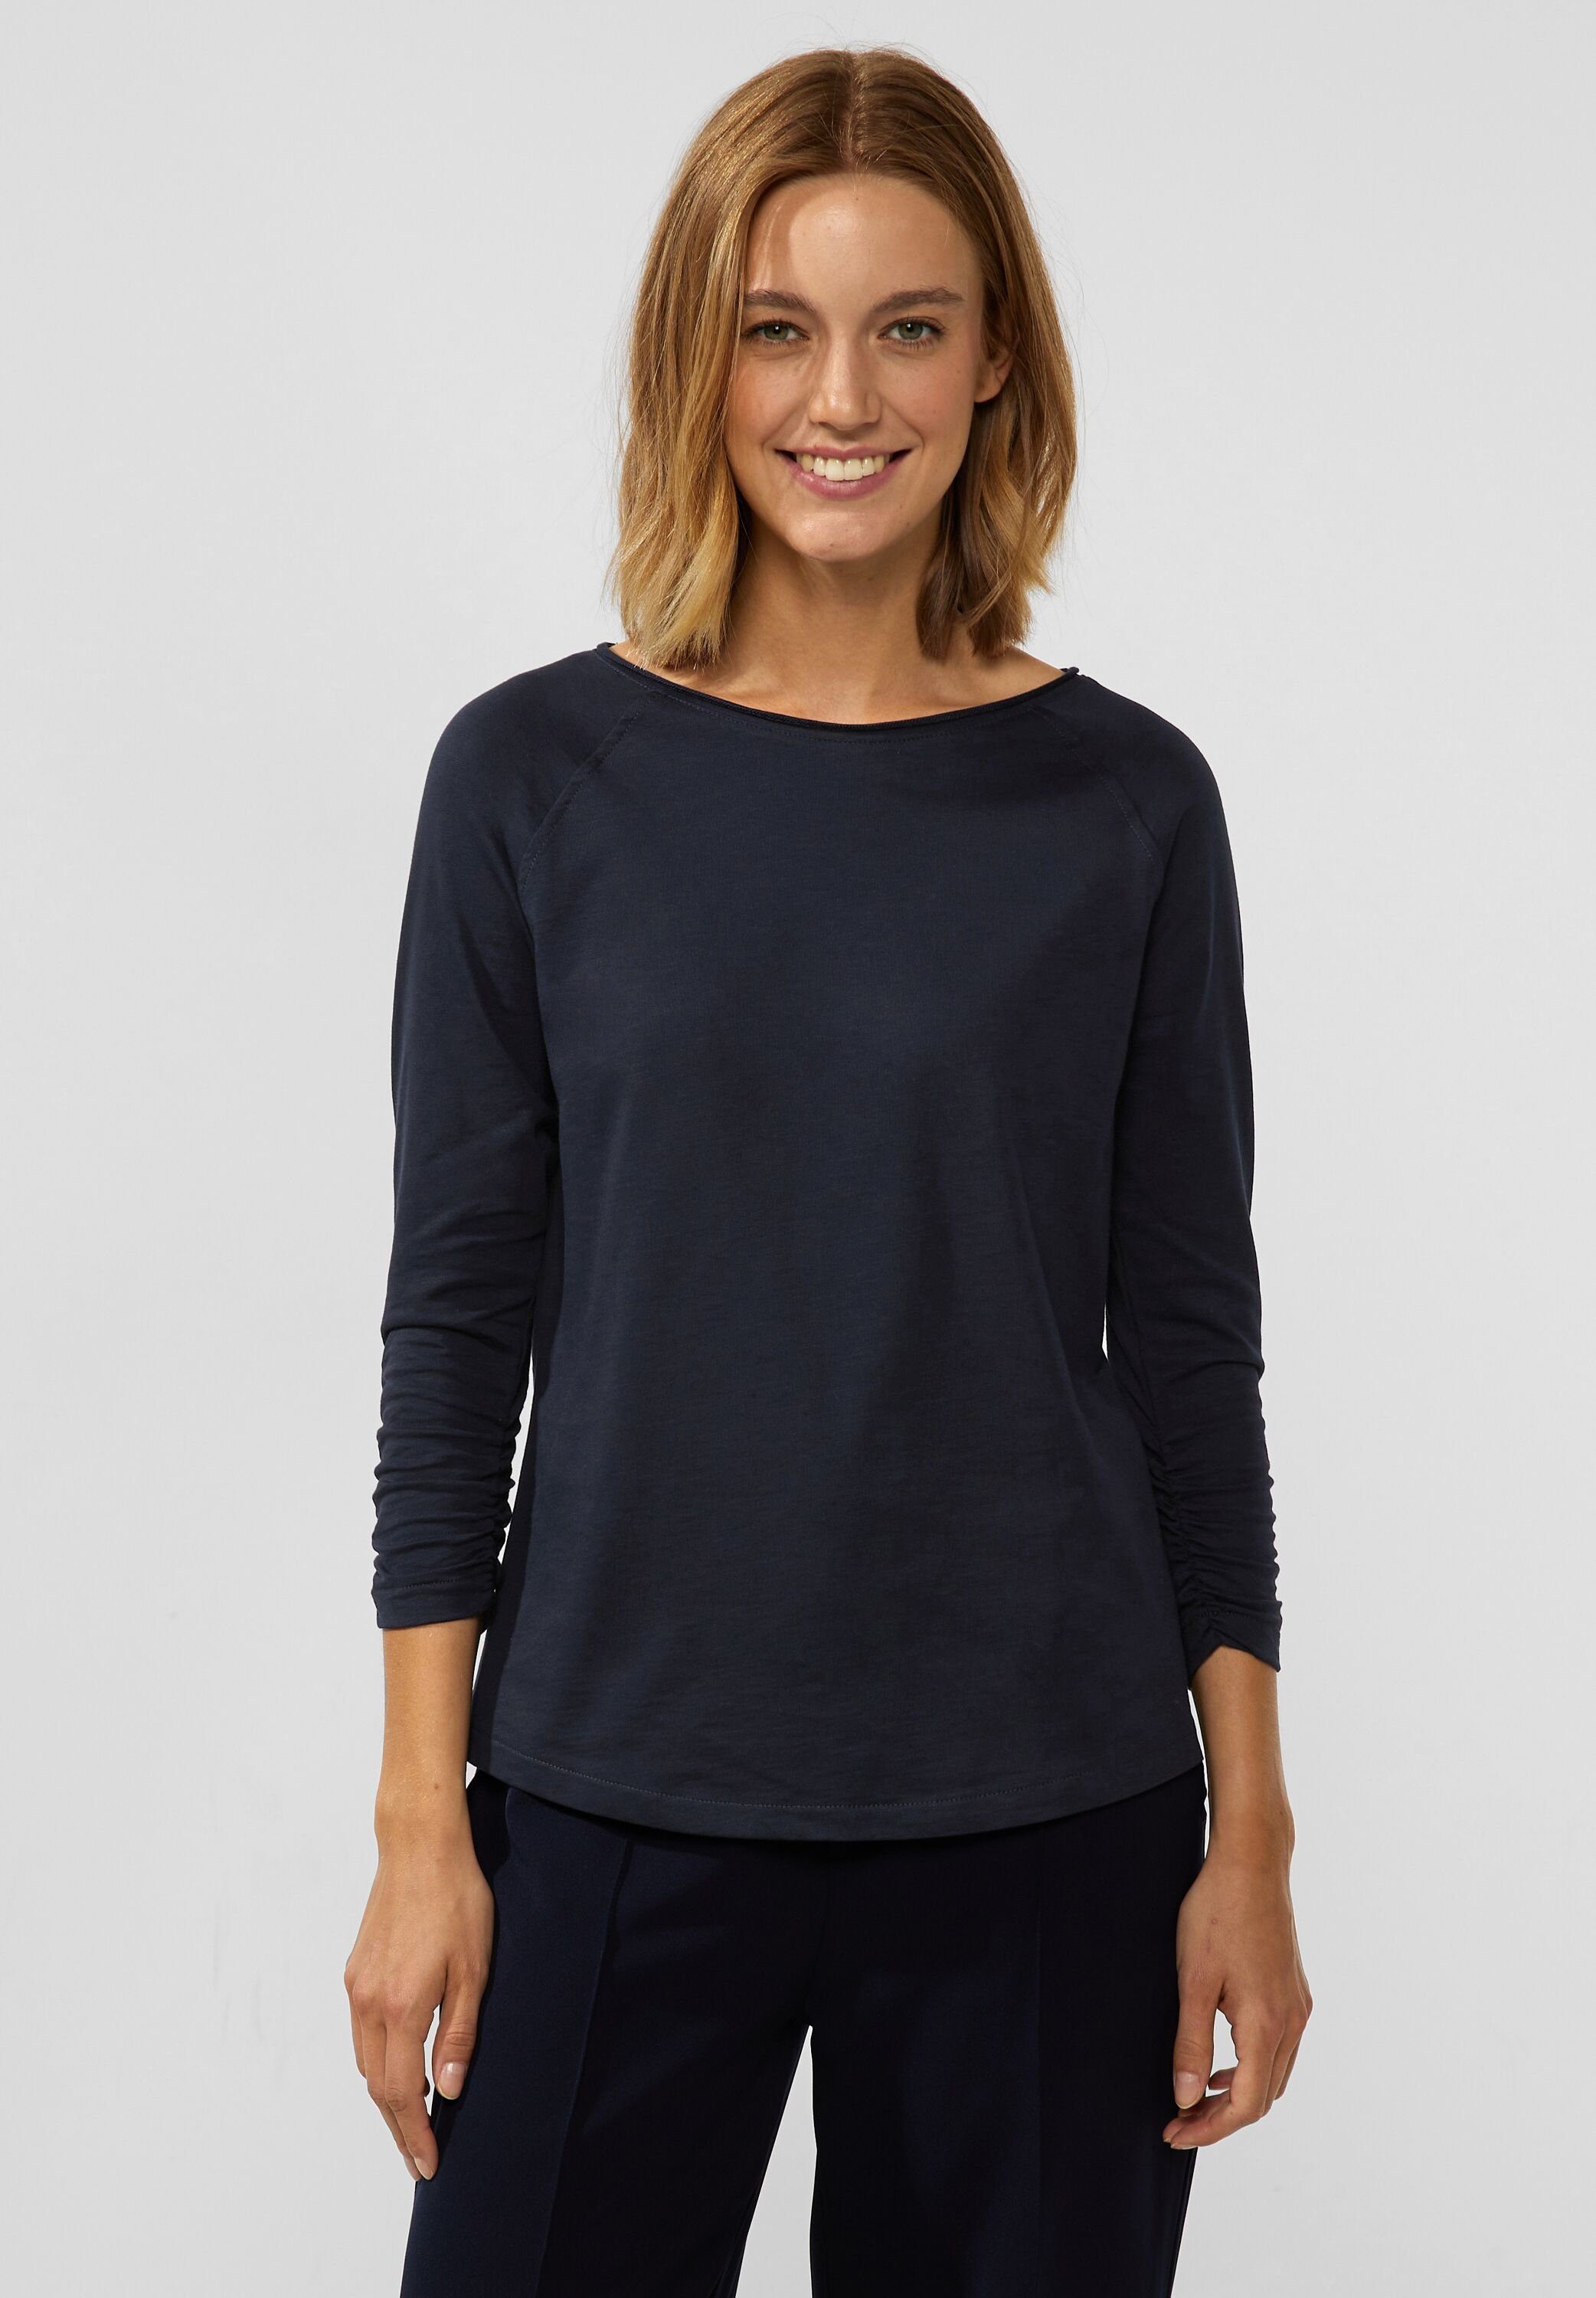 online OTTO | Vero für Moda Shirts 3/4 kaufen Arm Damen